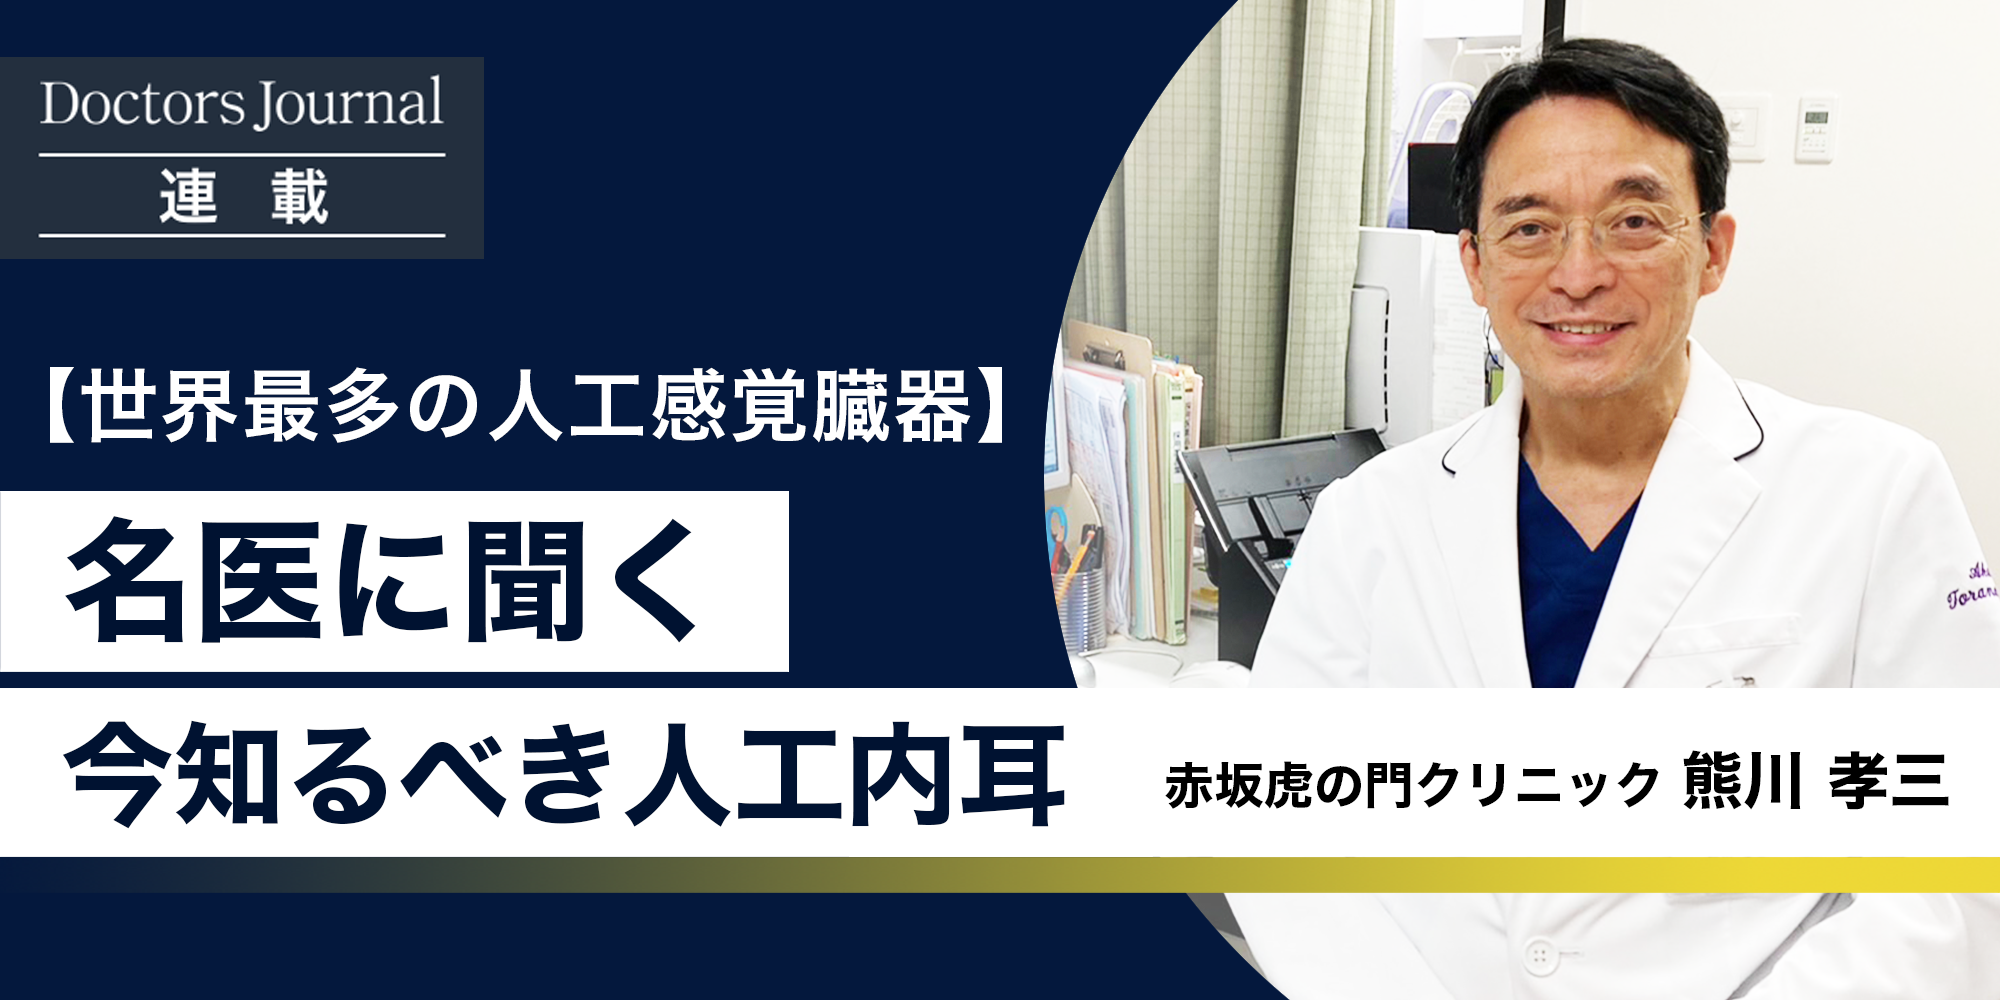 kumakawa doctor